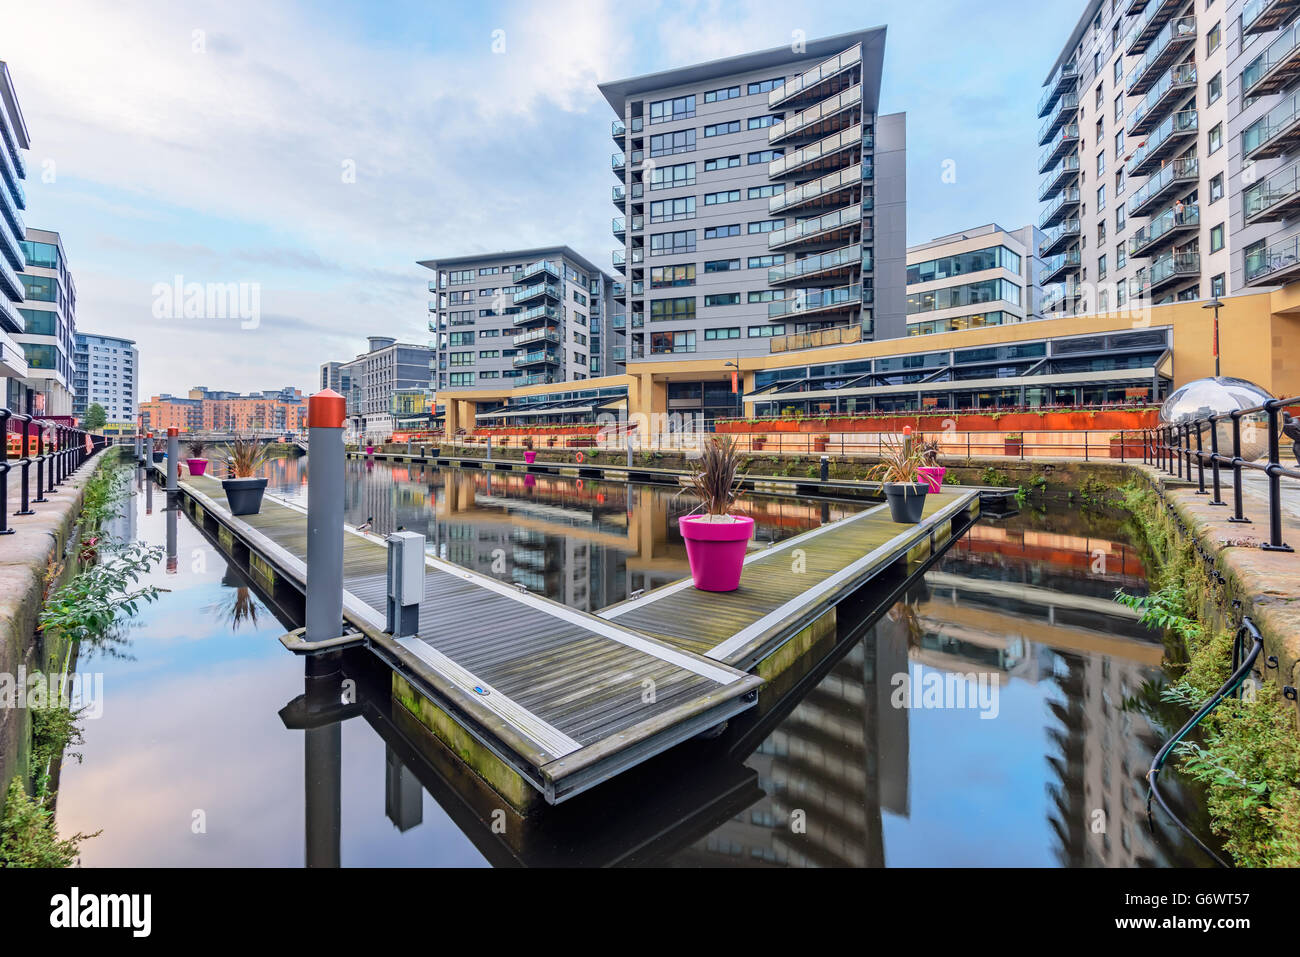 Leeds Dock verfügt über große Wohnbevölkerung in Wasser Wohnungen durch den Fluss Aire im Zentrum von Leeds, West Yorkshire, England Stockfoto